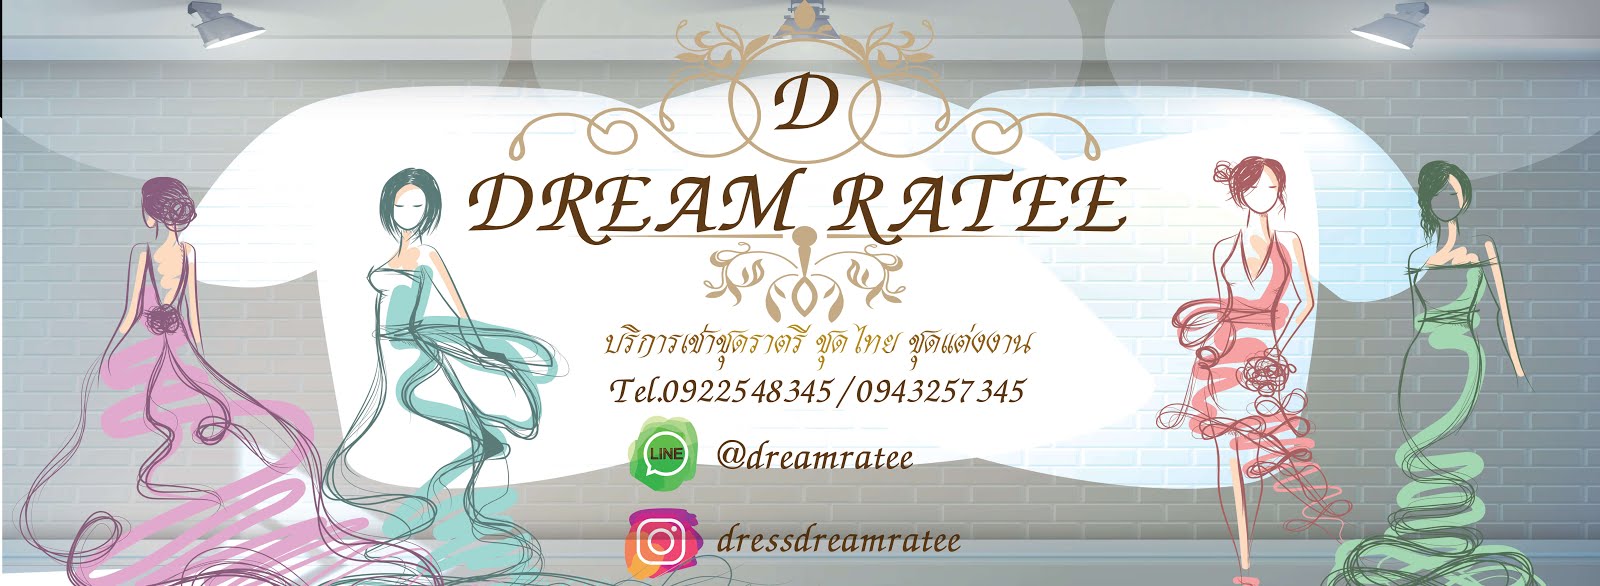 Dreamratee Shop